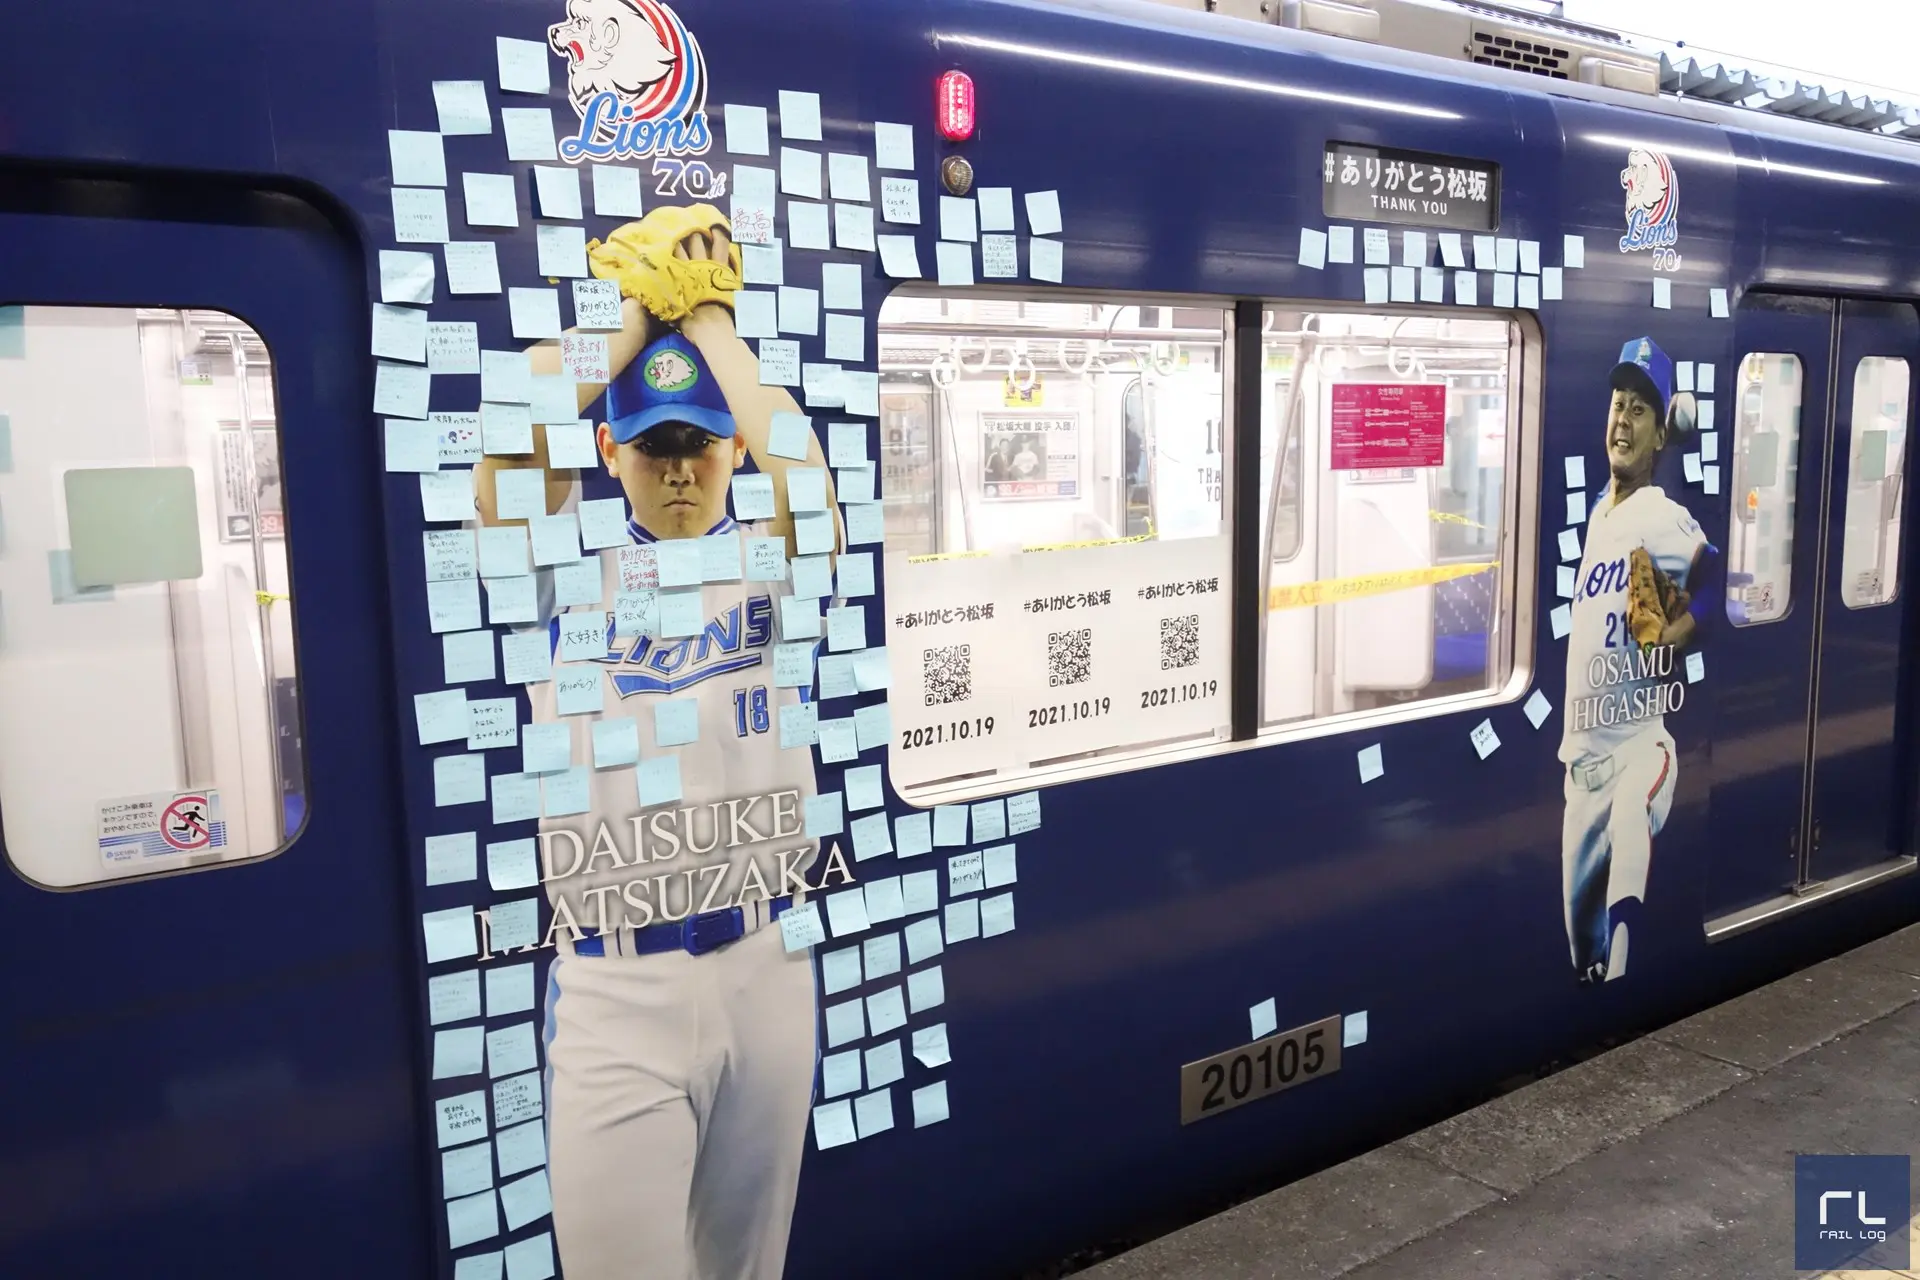 西武ライオンズのラッピング電車　三代目L-train（エルトレイン）、松坂大輔投手の引退試合にメッセージが寄せられる